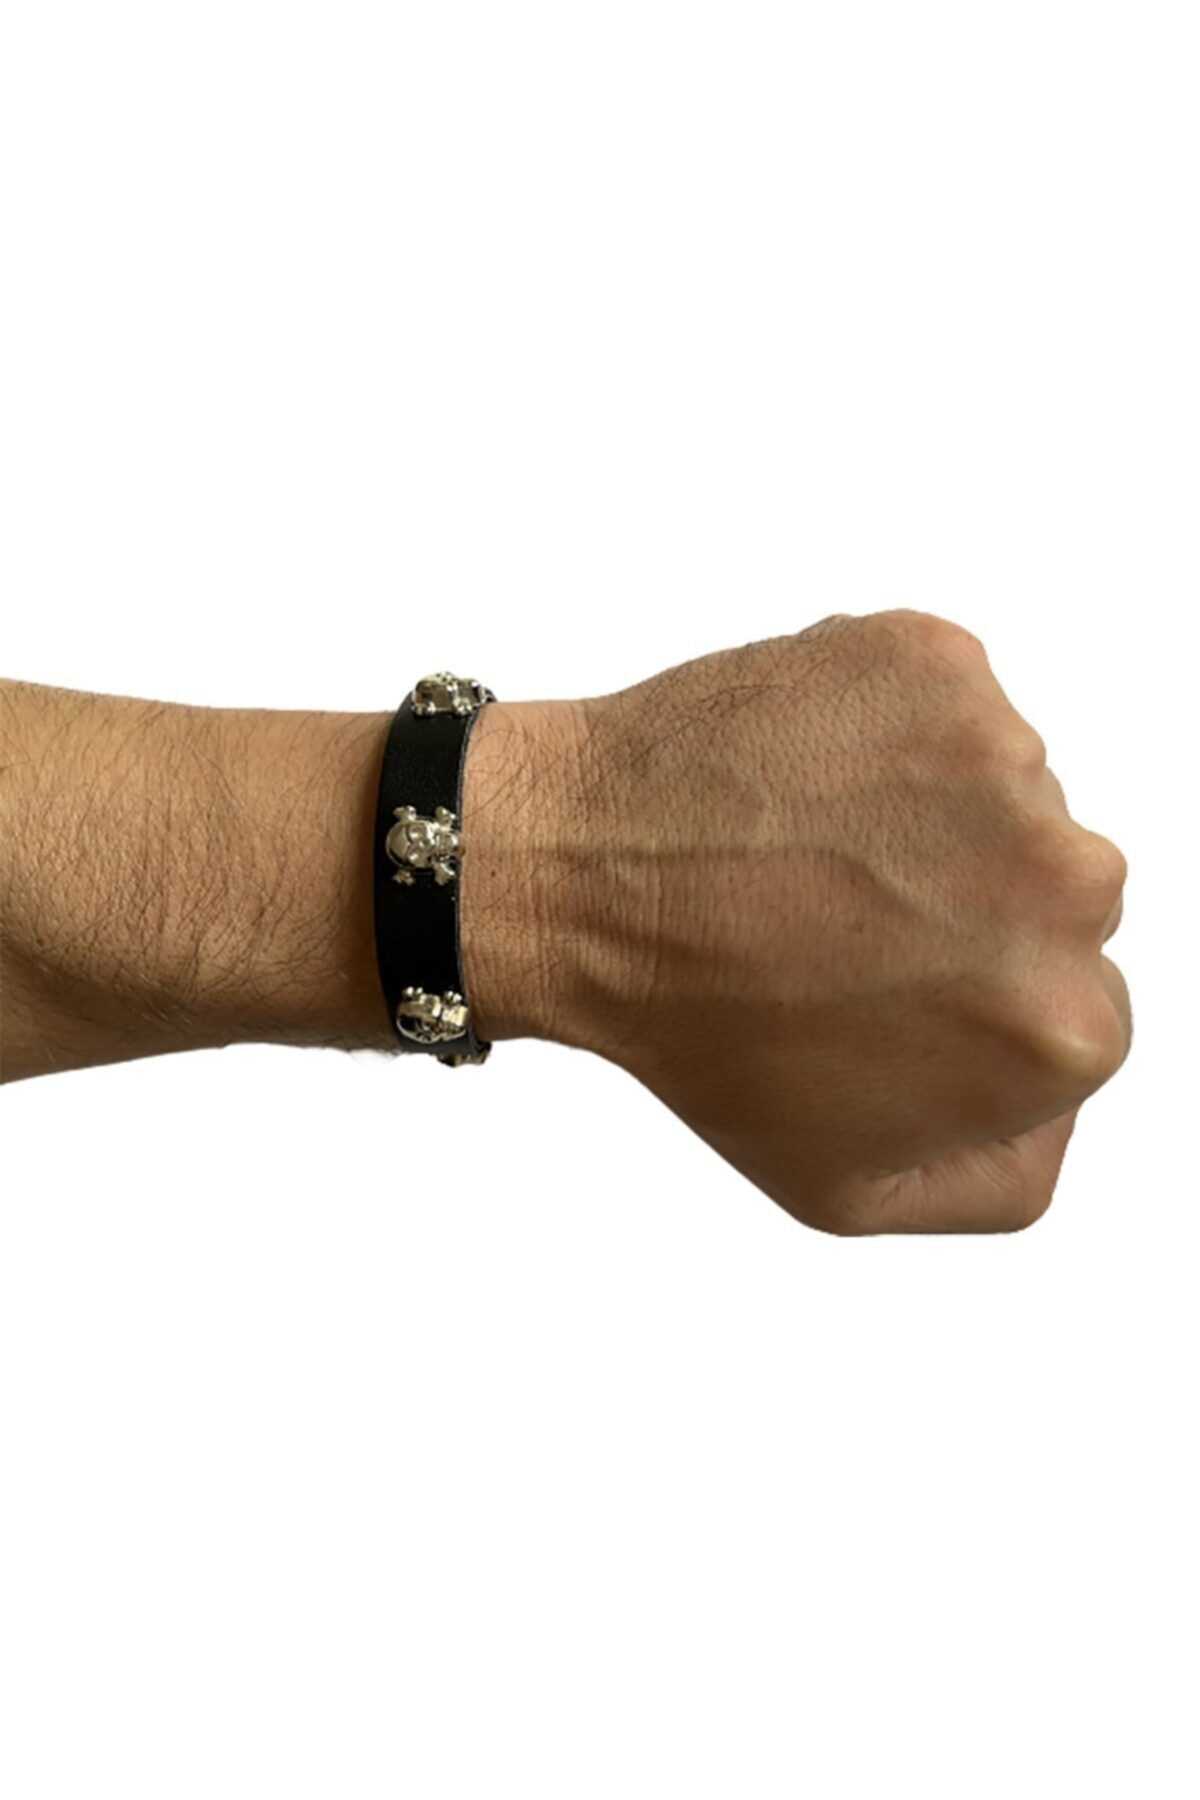 خرید دستبند چرم مردانه از ترکیه برند Metal Giyim رنگ مشکی کد ty197199449